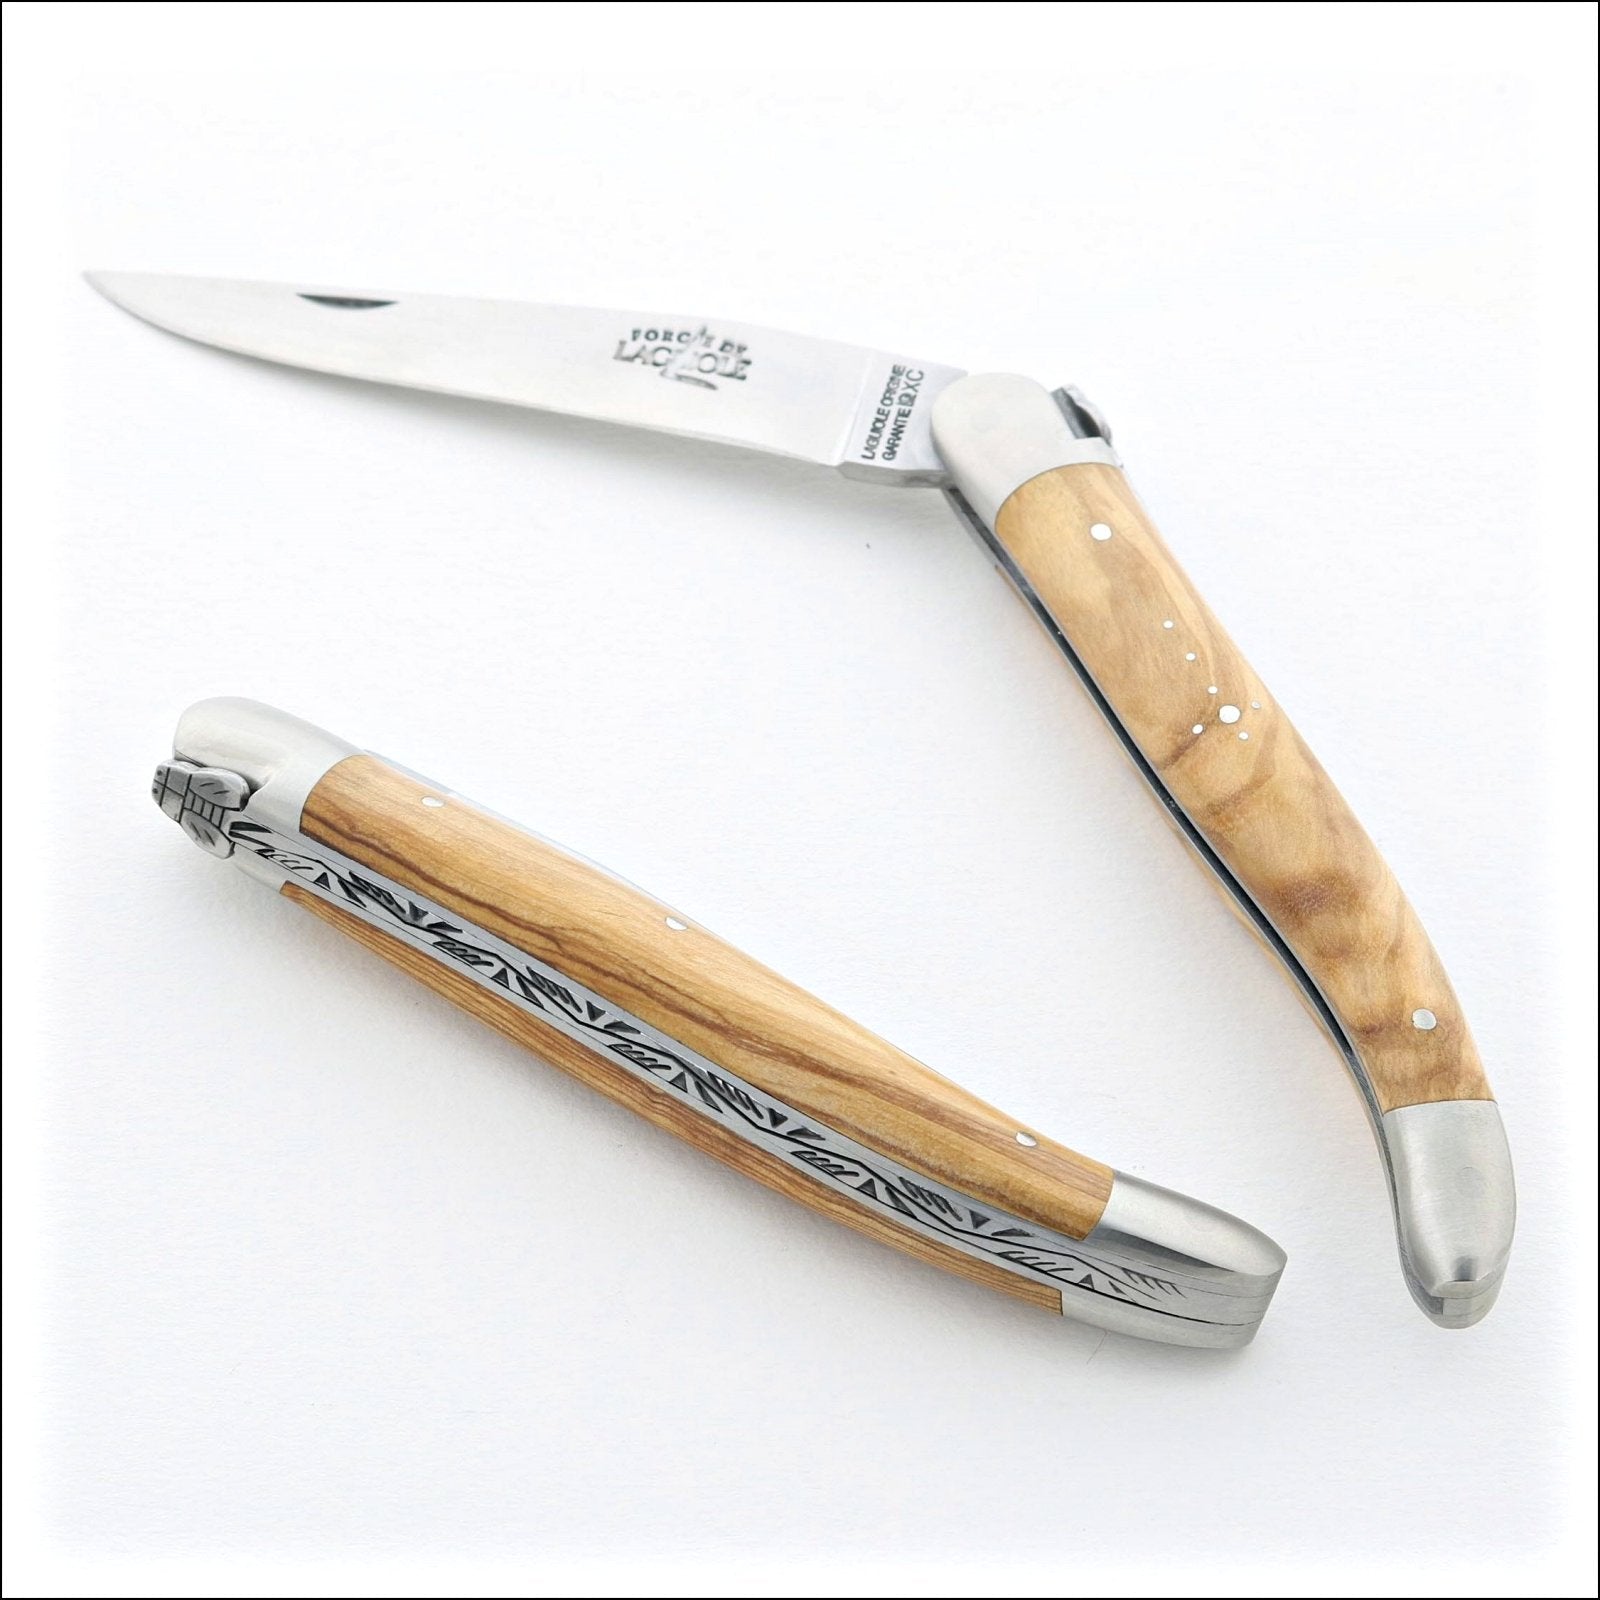 https://www.laguiole-imports.com/cdn/shop/products/Laguiole-Pocket-Knife-11-cm-Carbon-Blade-Olive-Wood-Forge-de-Laguiole-2.jpg?v=1679480828